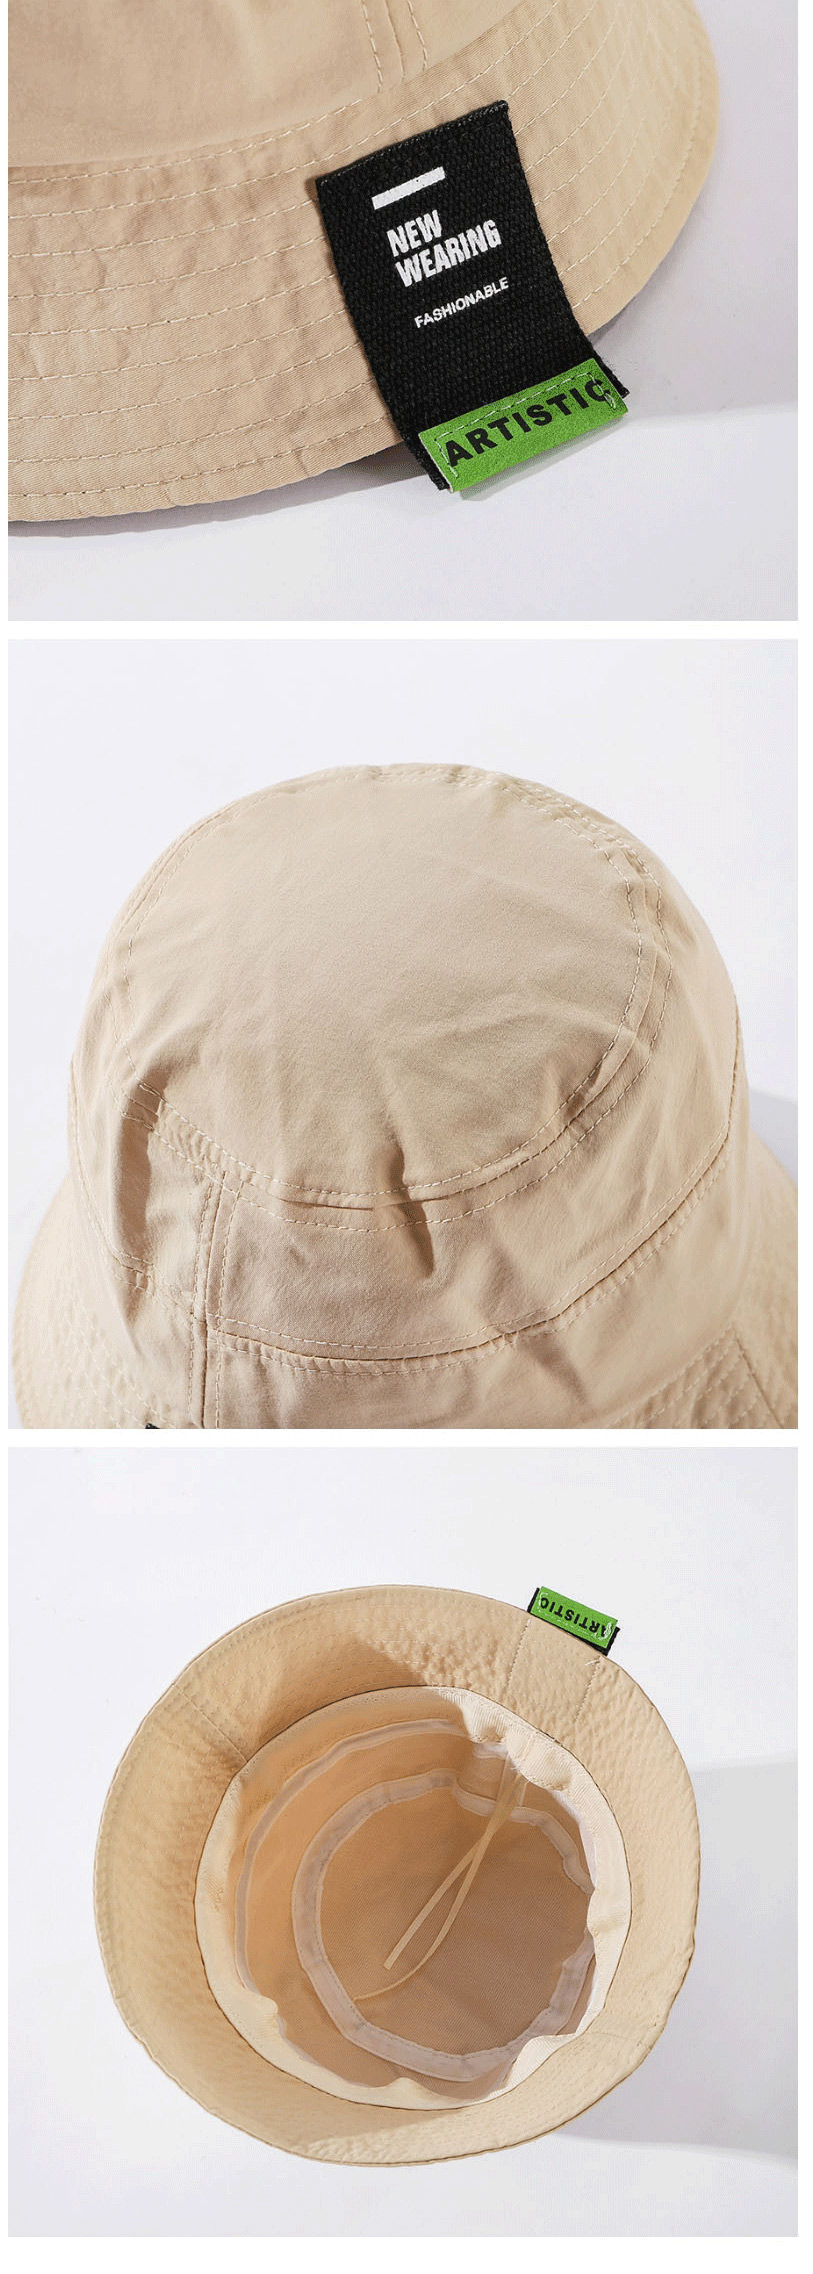 Fashion Black Sunshade Sunscreen Solid Color Fisherman Hat,Sun Hats